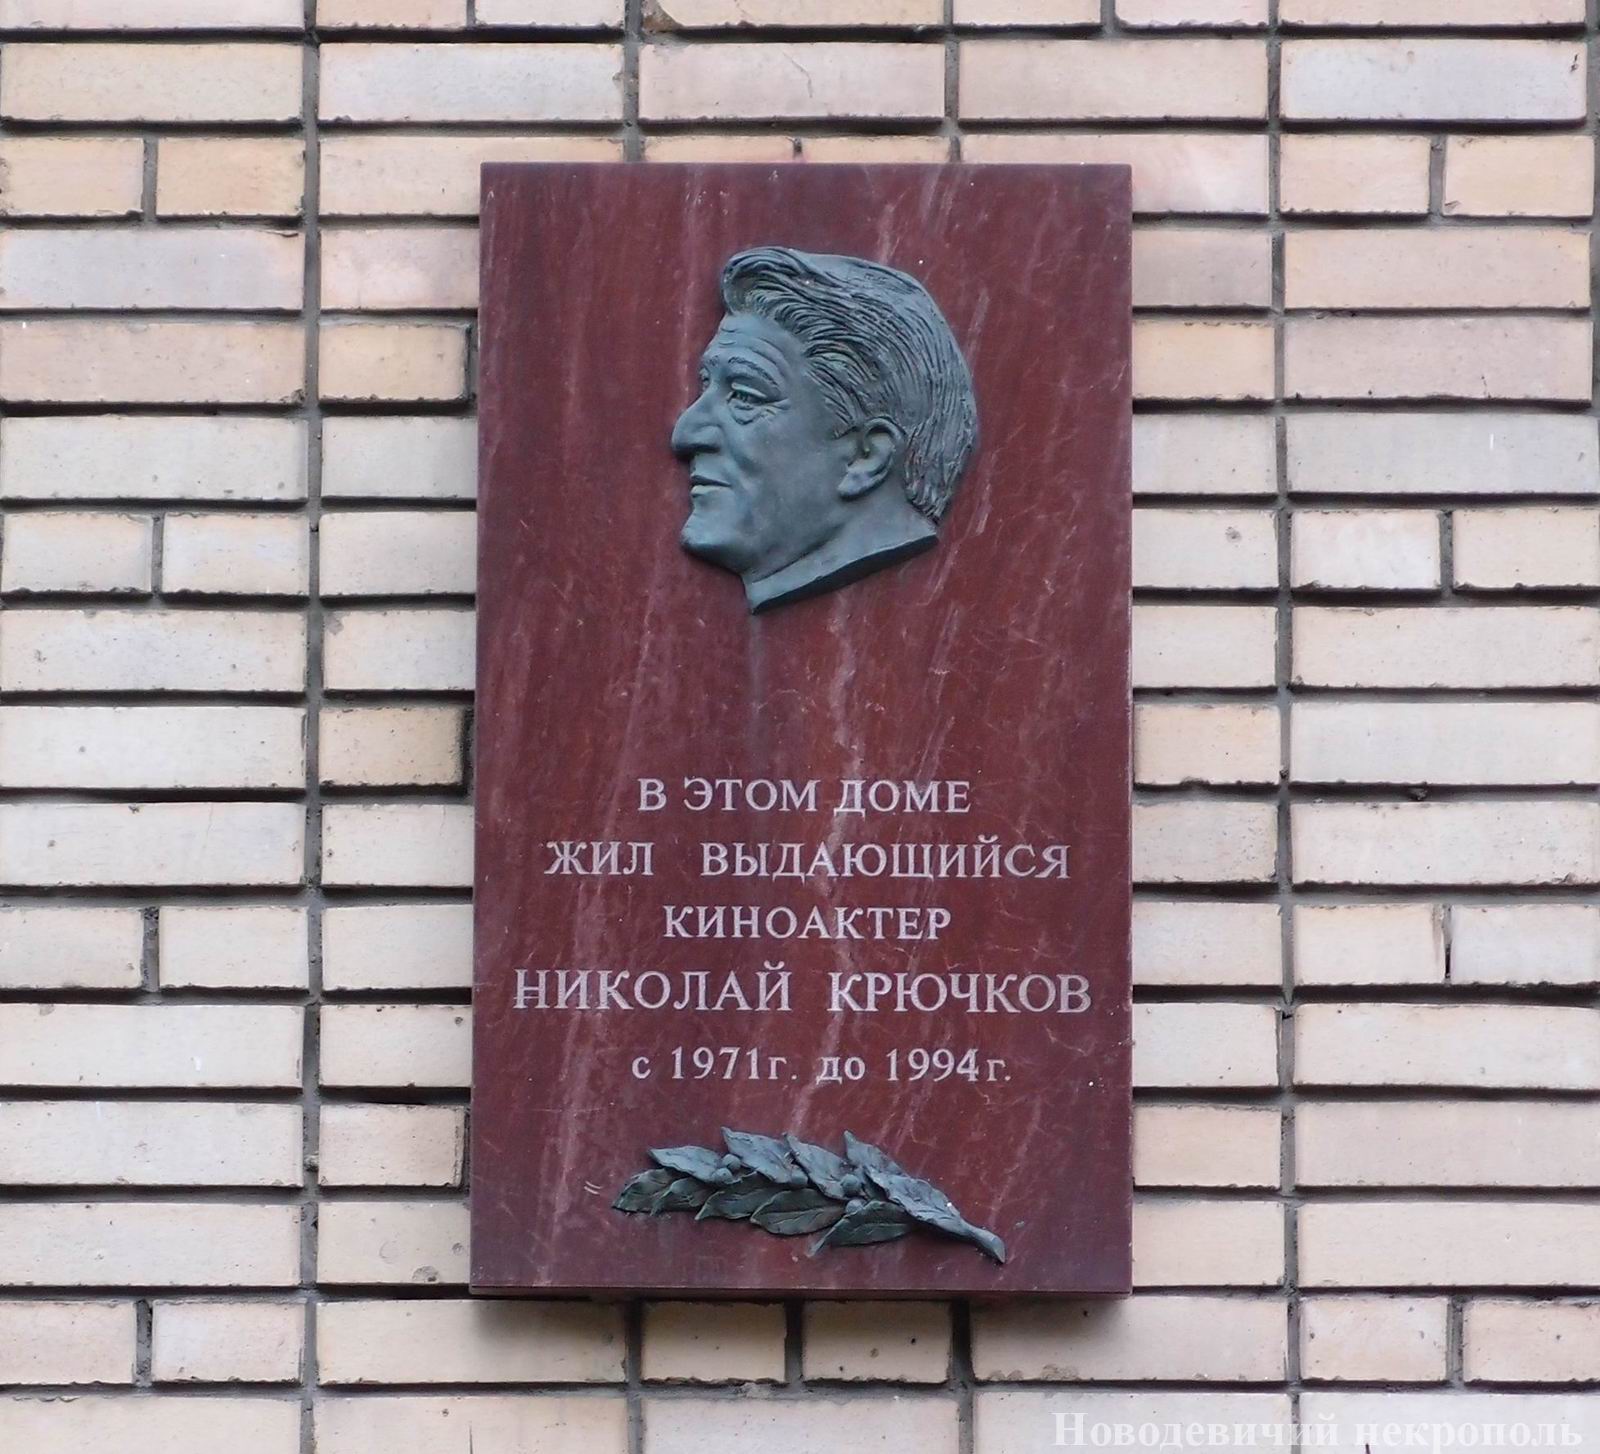 Мемориальная доска Крючкову Н.А. (1911–1994), ск. Ю.Г.Орехов, в Малом Власьевском переулке, дом 7, открыта 27.7.1999.